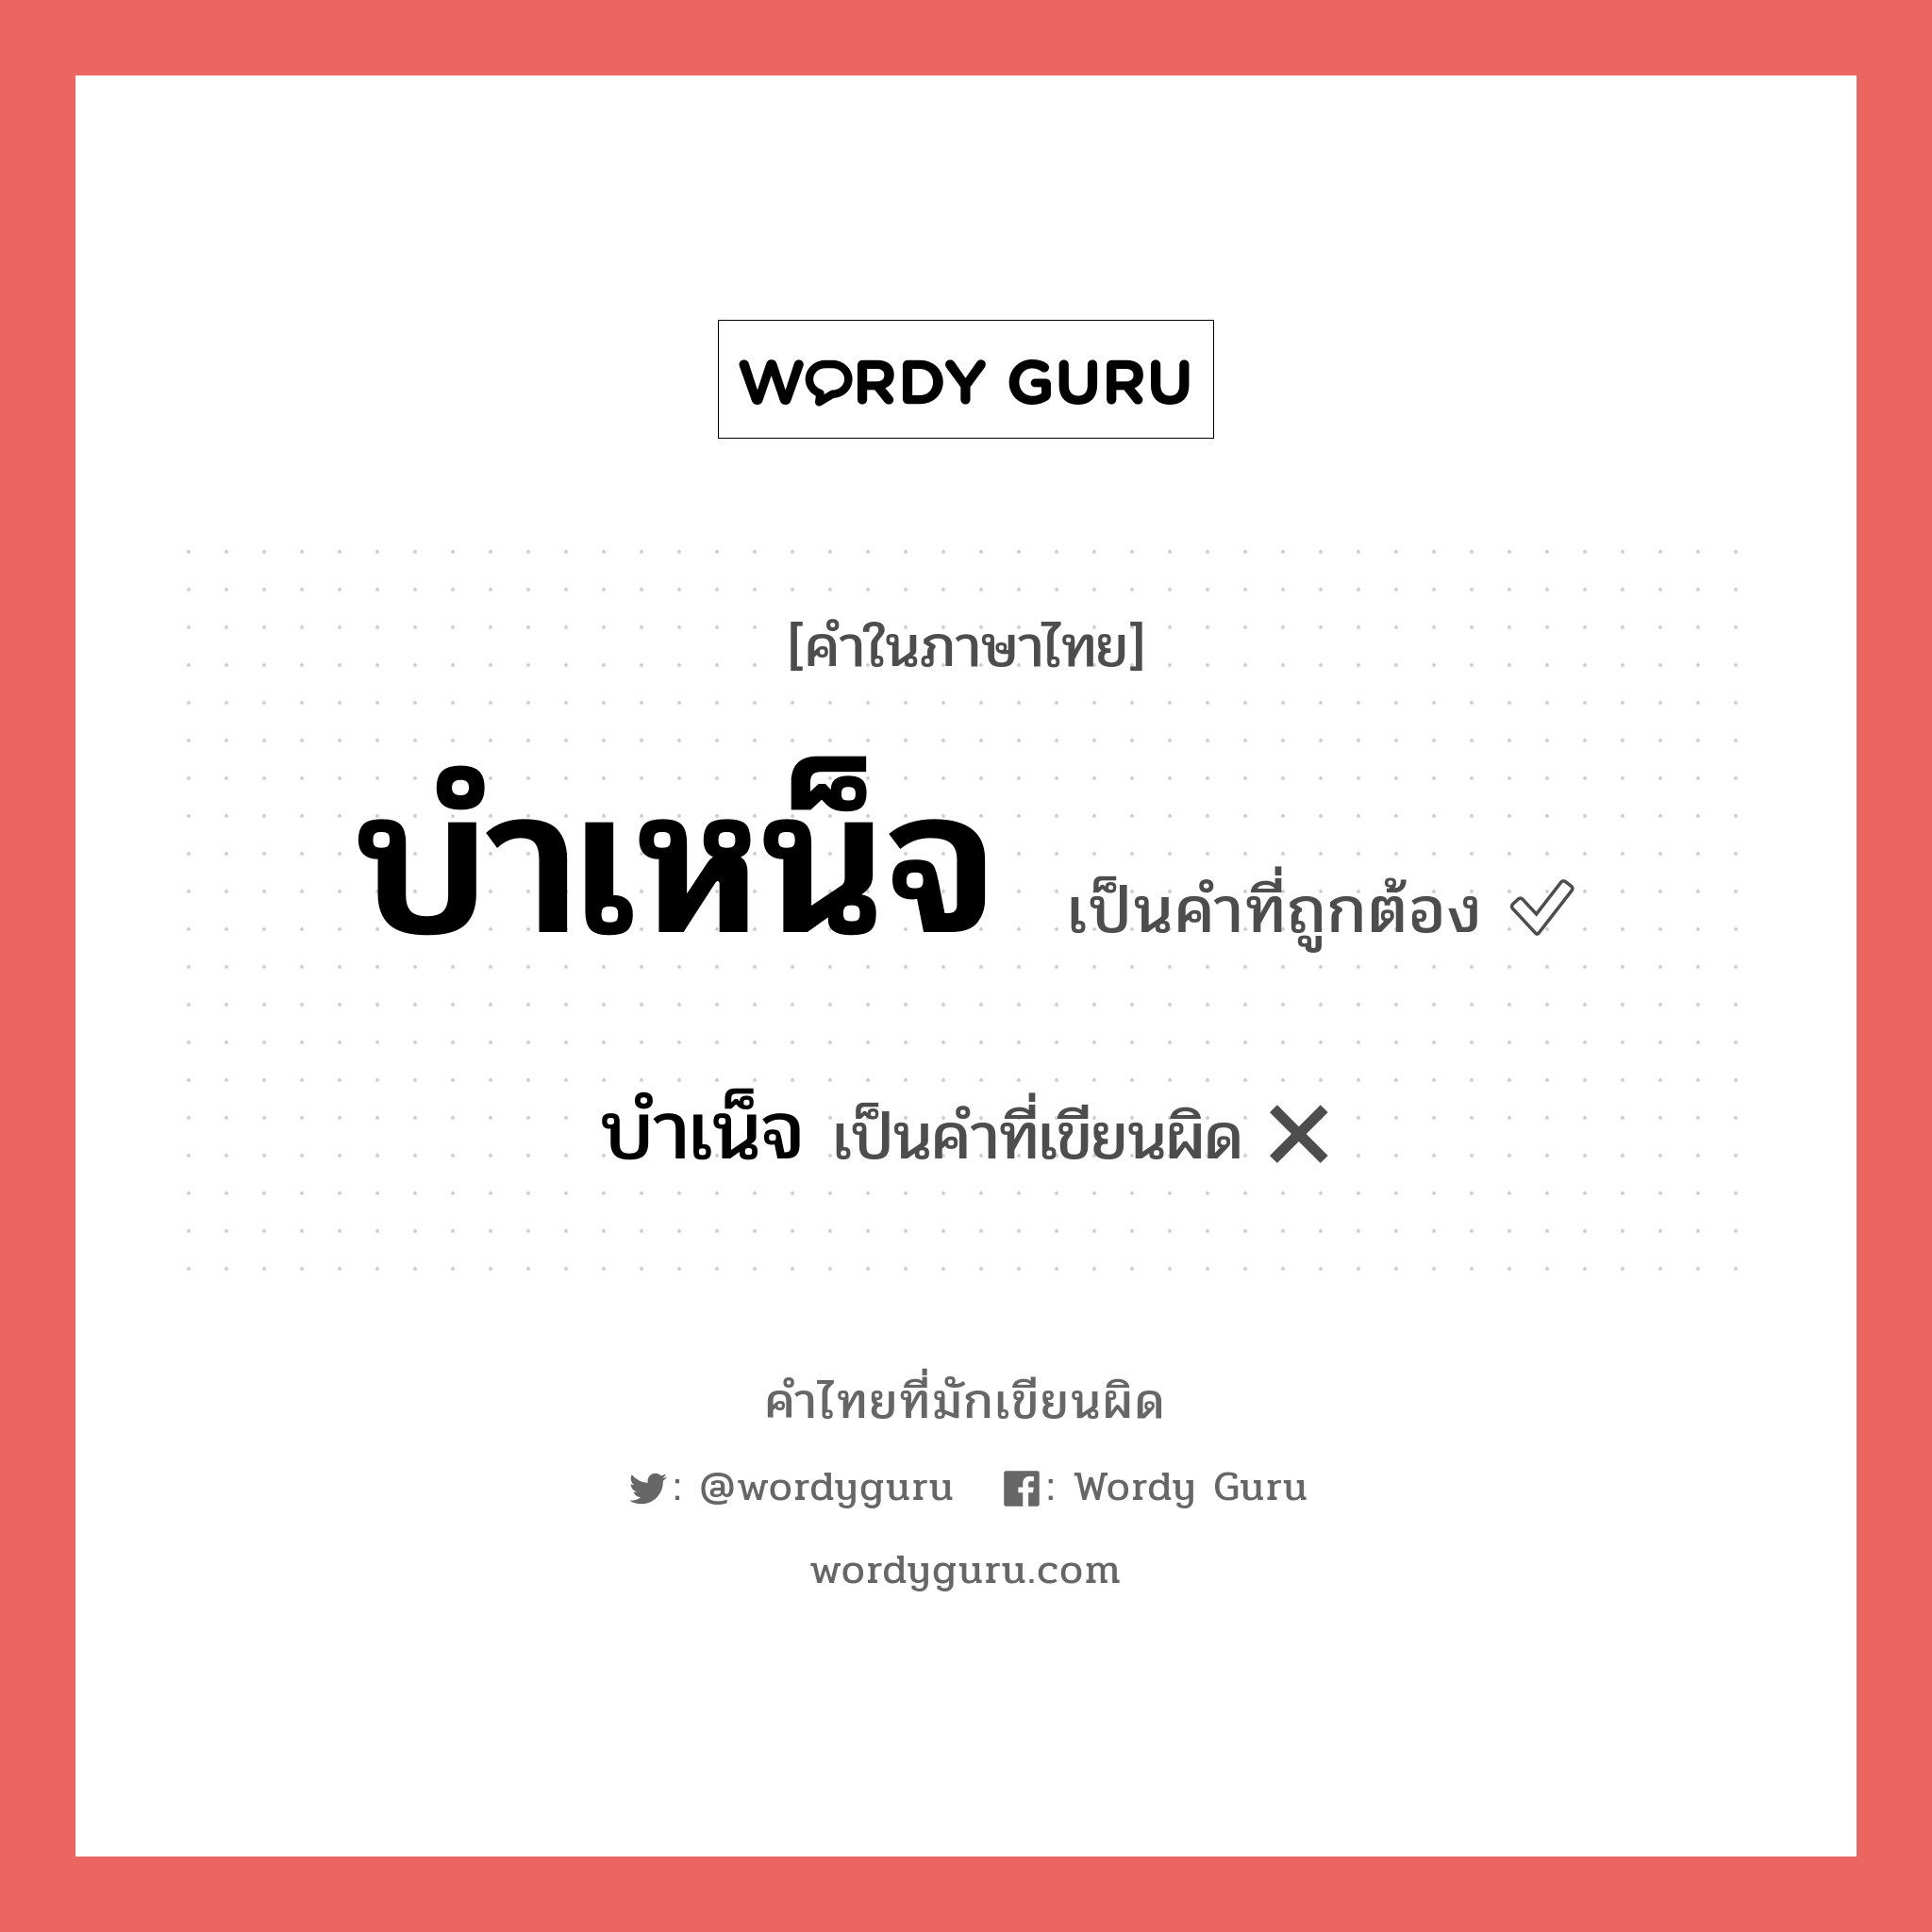 บำเหน็จ หรือ บำเน็จ คำไหนเขียนถูก?, คำในภาษาไทยที่มักเขียนผิด บำเหน็จ คำที่ผิด ❌ บำเน็จ